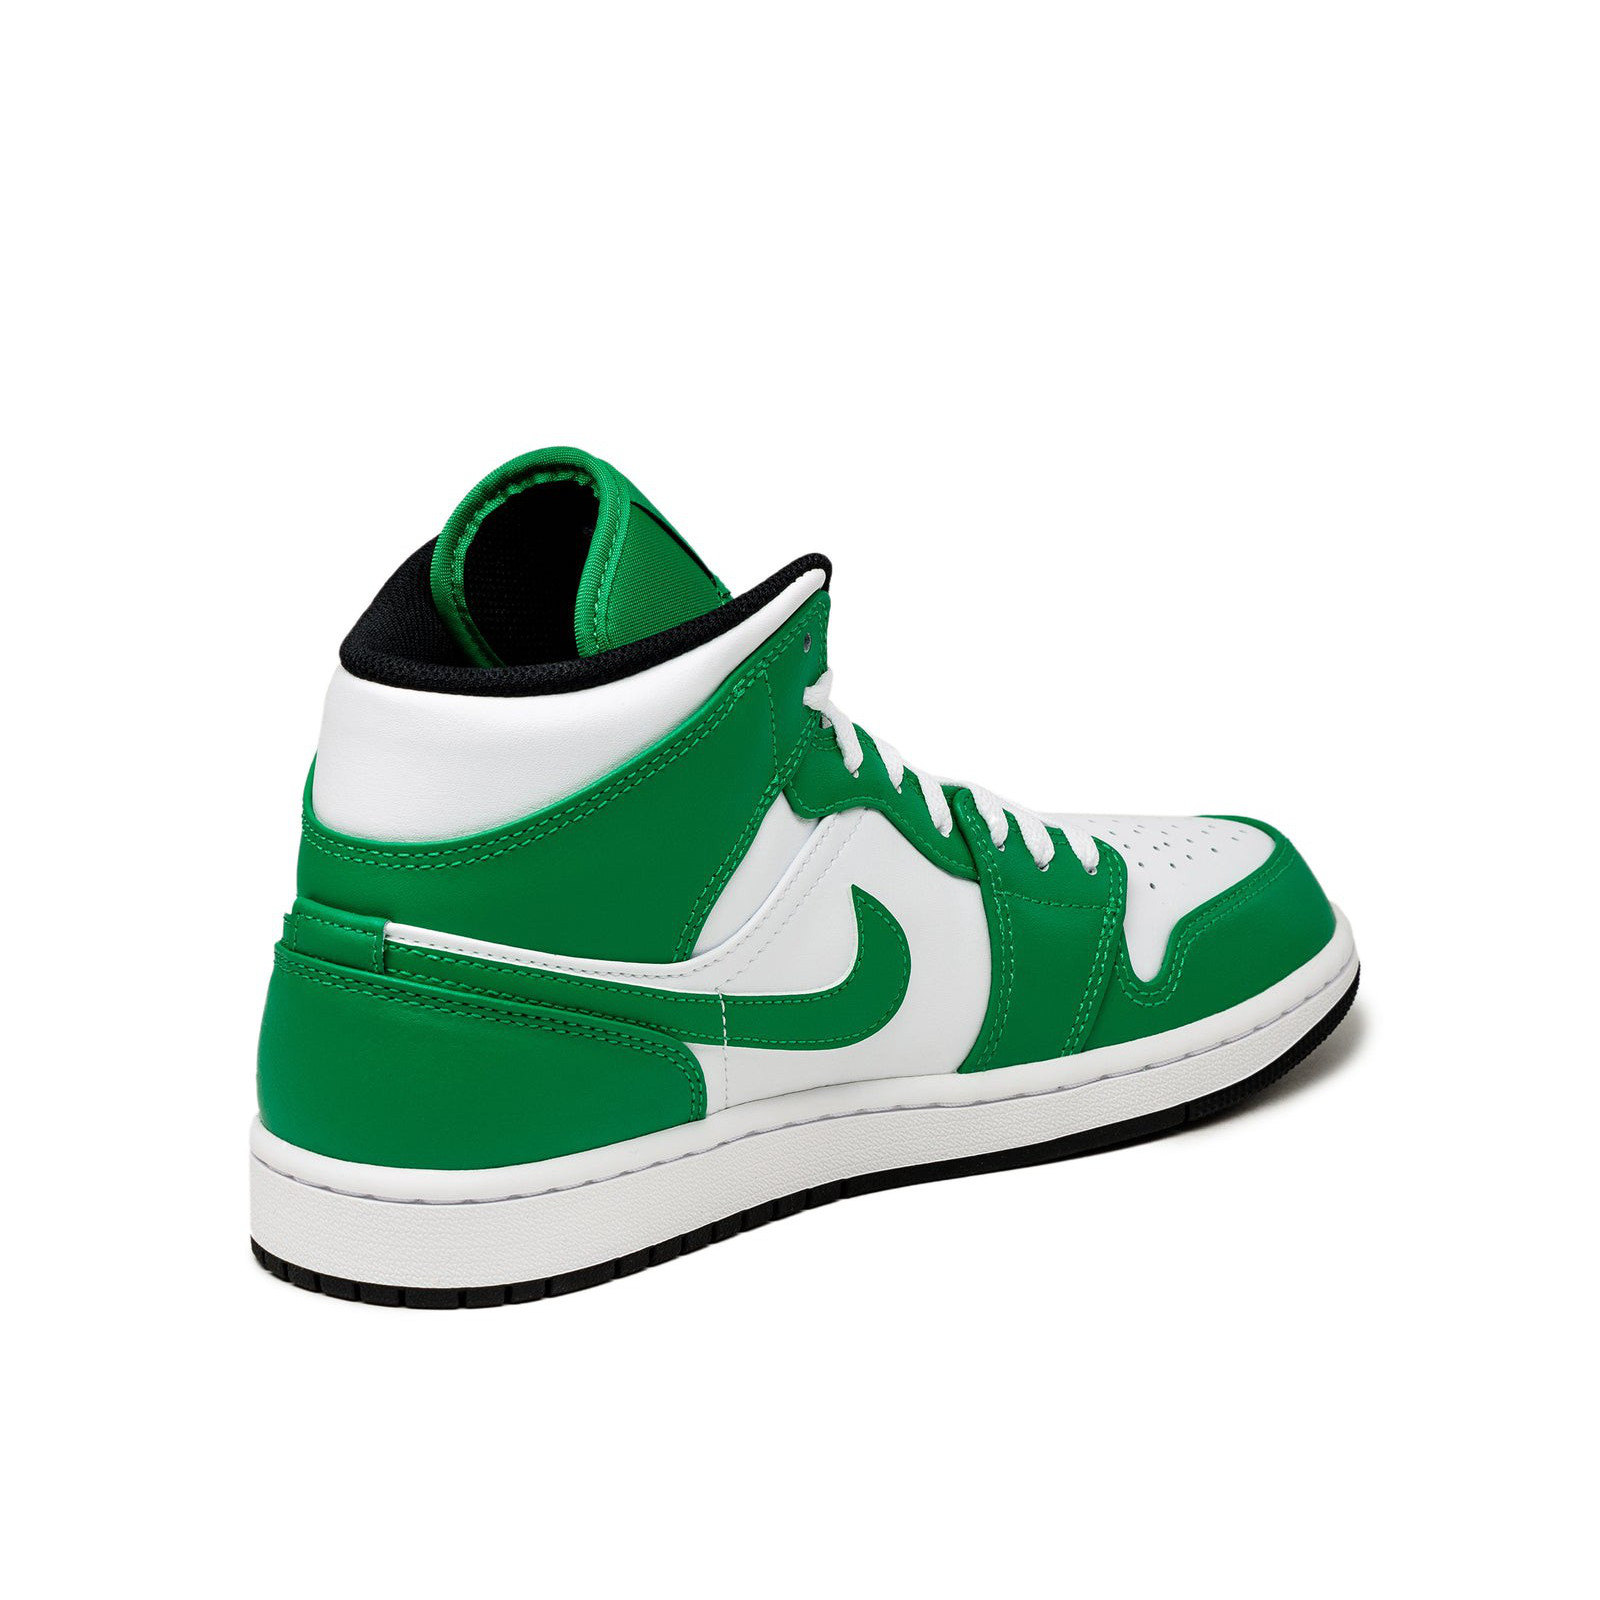 Air Jordan 1 Mid
« Lucky Green »